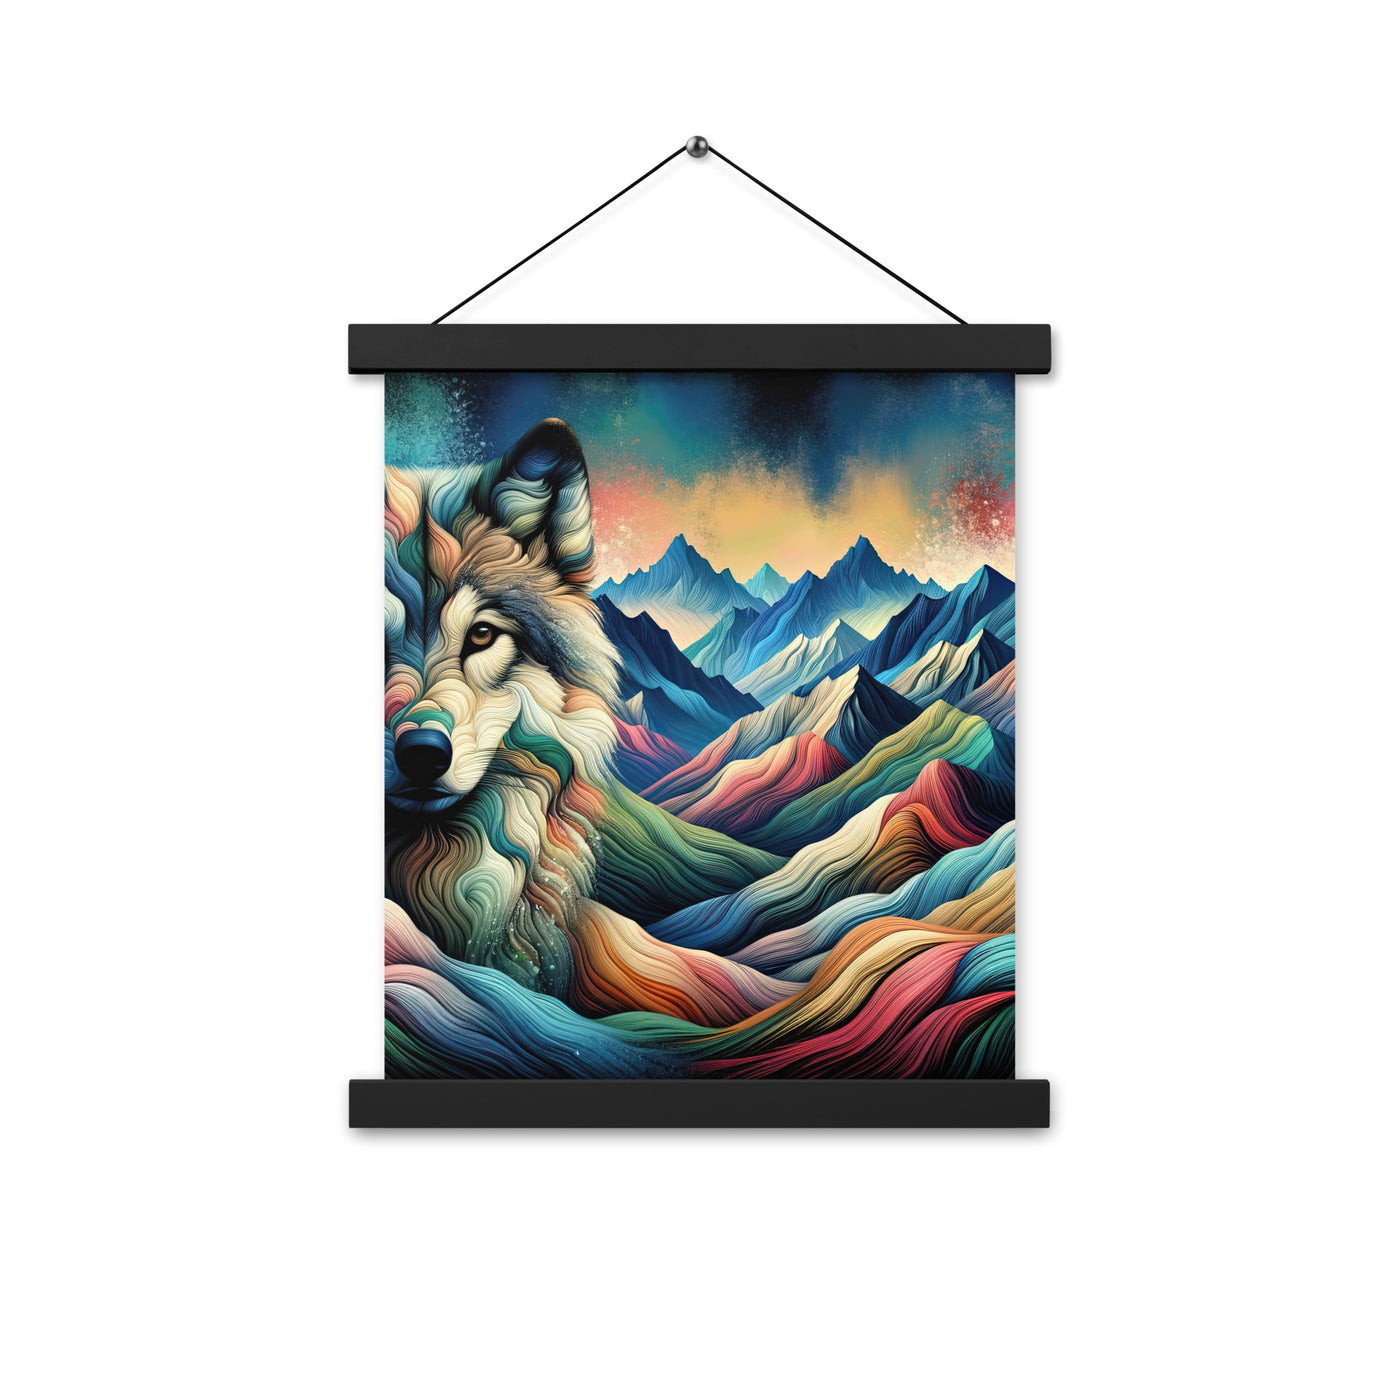 Traumhaftes Alpenpanorama mit Wolf in wechselnden Farben und Mustern (AN) - Premium Poster mit Aufhängung xxx yyy zzz 27.9 x 35.6 cm